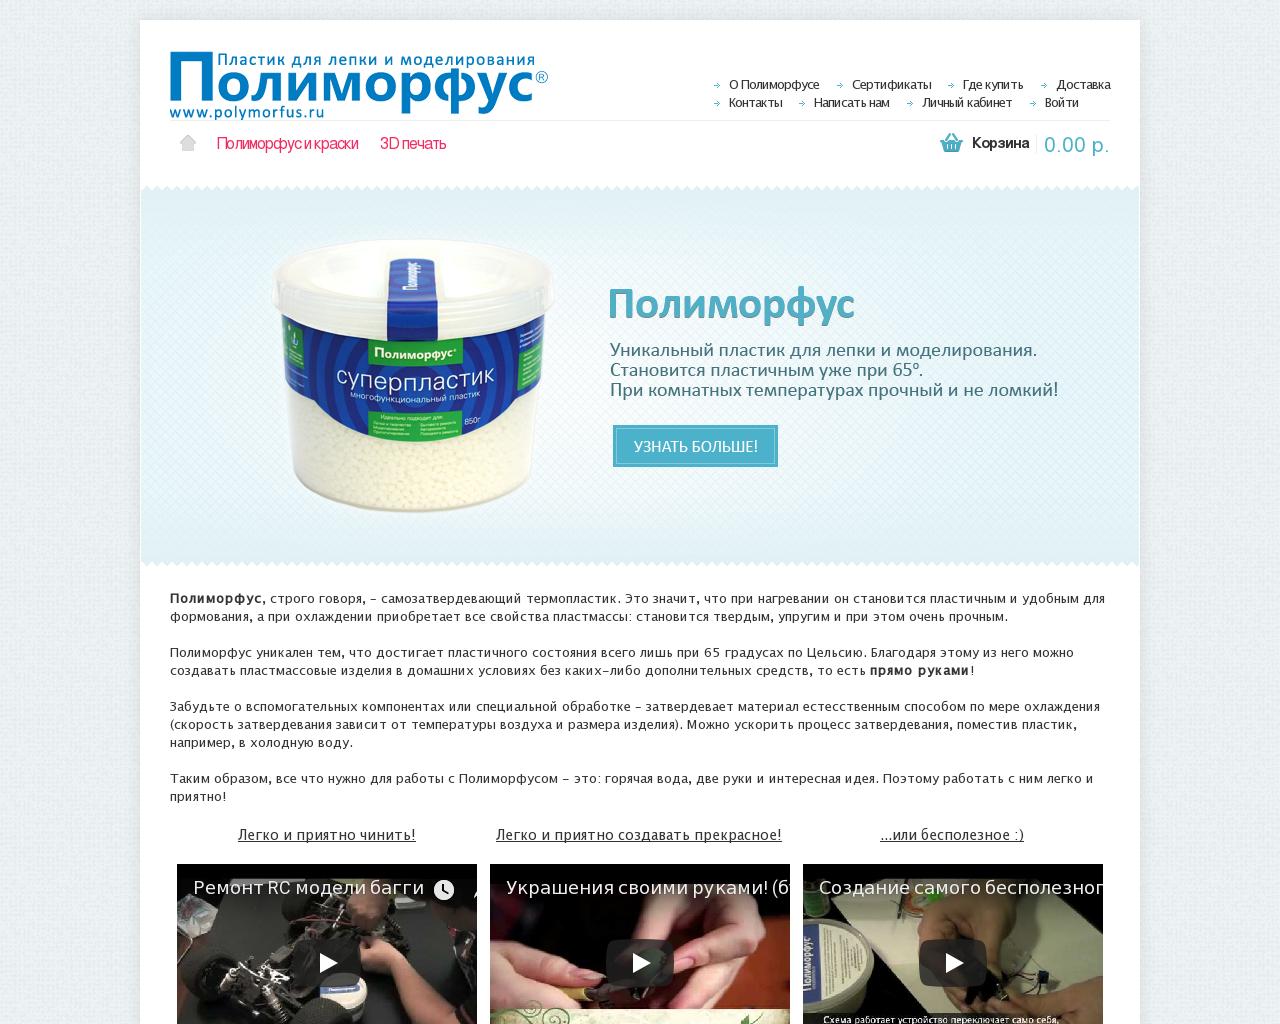 Изображение сайта polymorfus.ru в разрешении 1280x1024